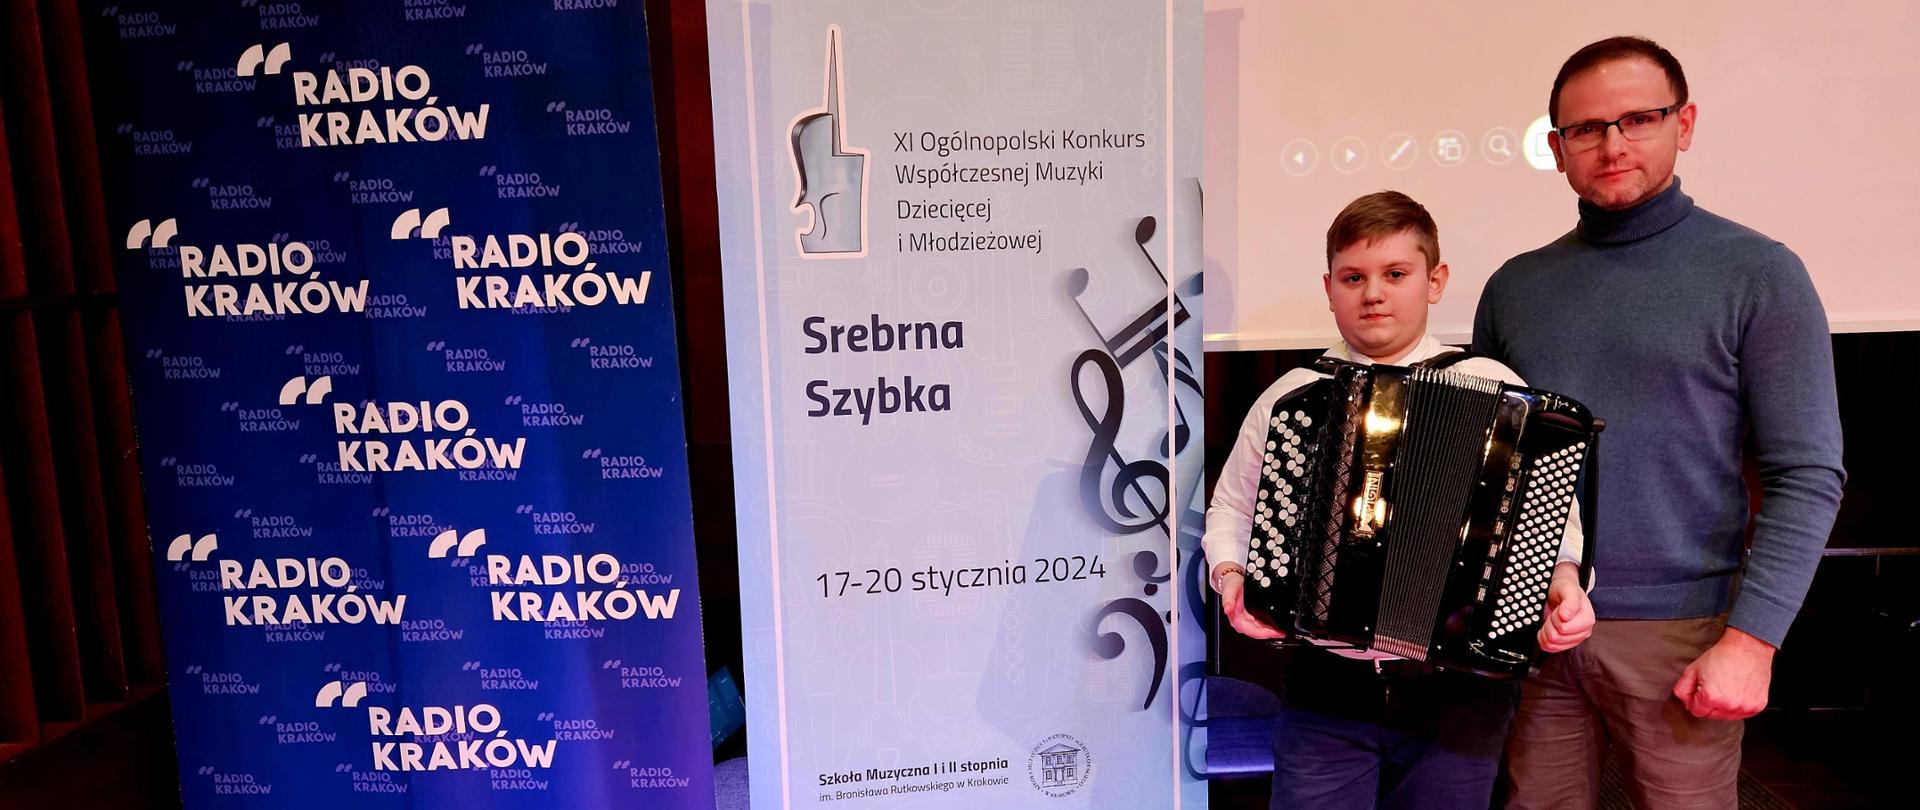 Zdjęcie nauczyciela mgra Krzysztofa Burego oraz jego ucznia Szymona Kukli obok rollupów reklamujących konkurs oraz Radio Kraków